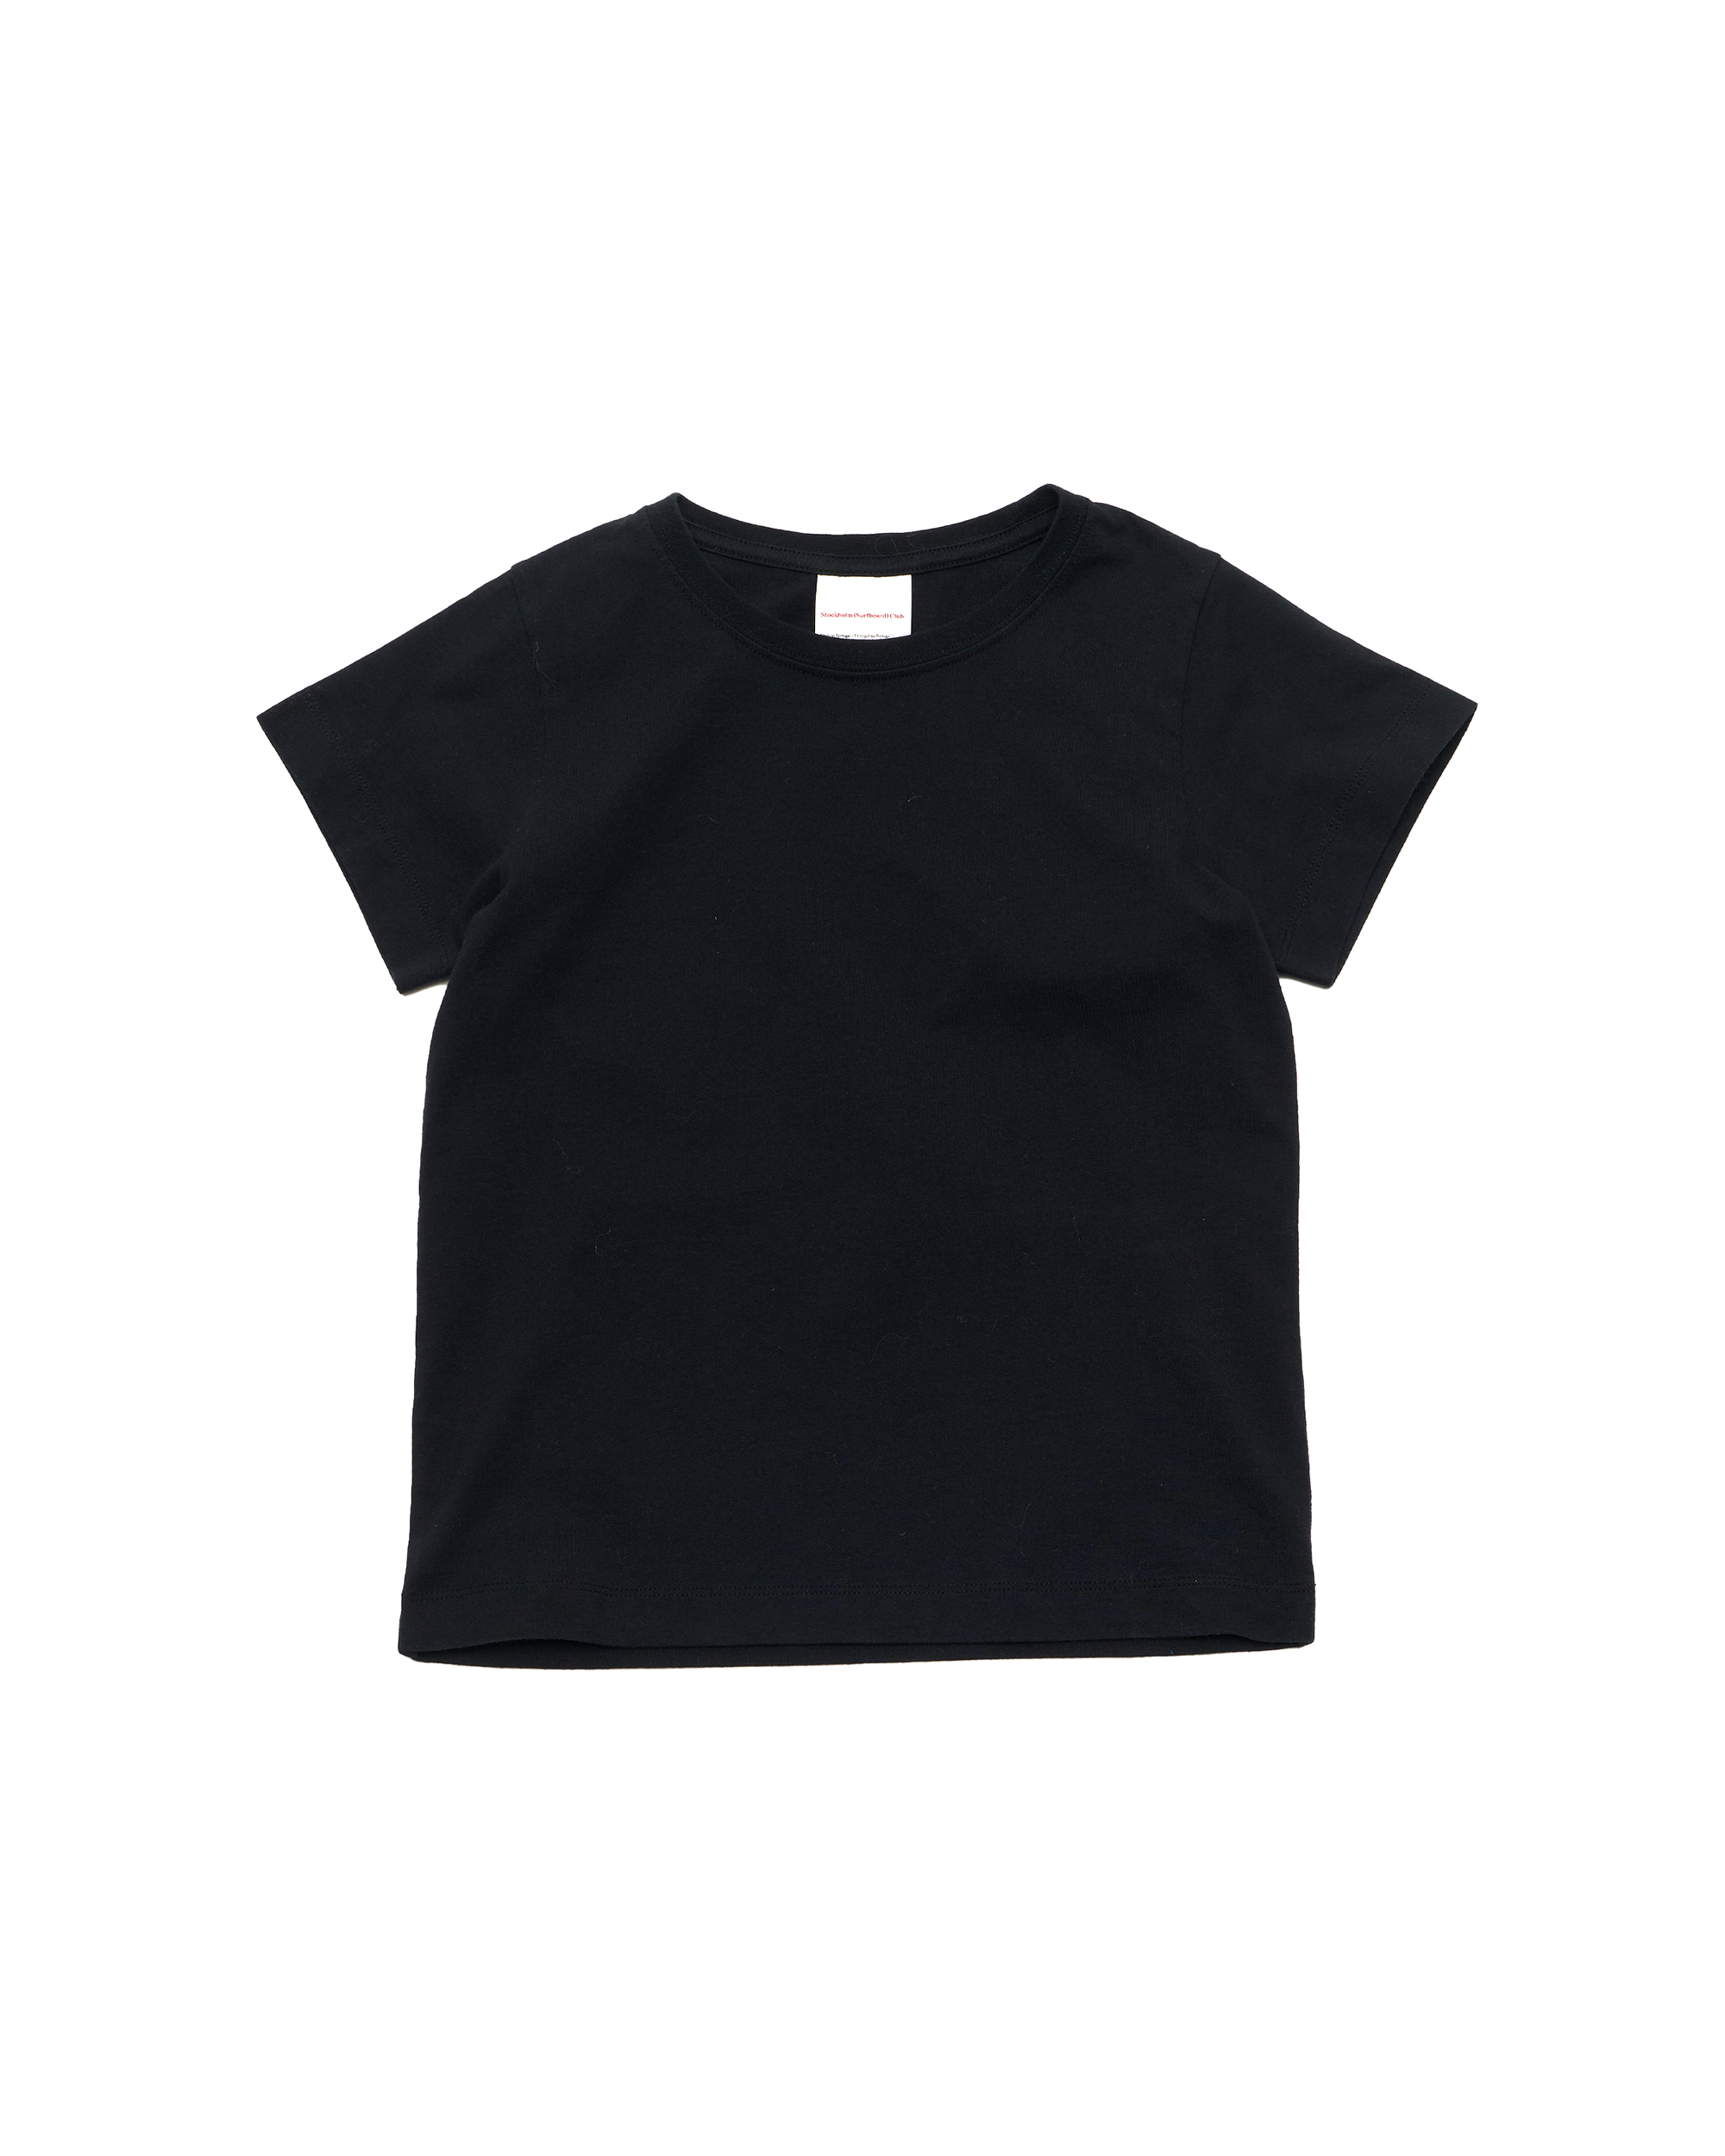 Mini Cap T-Shirt - Black